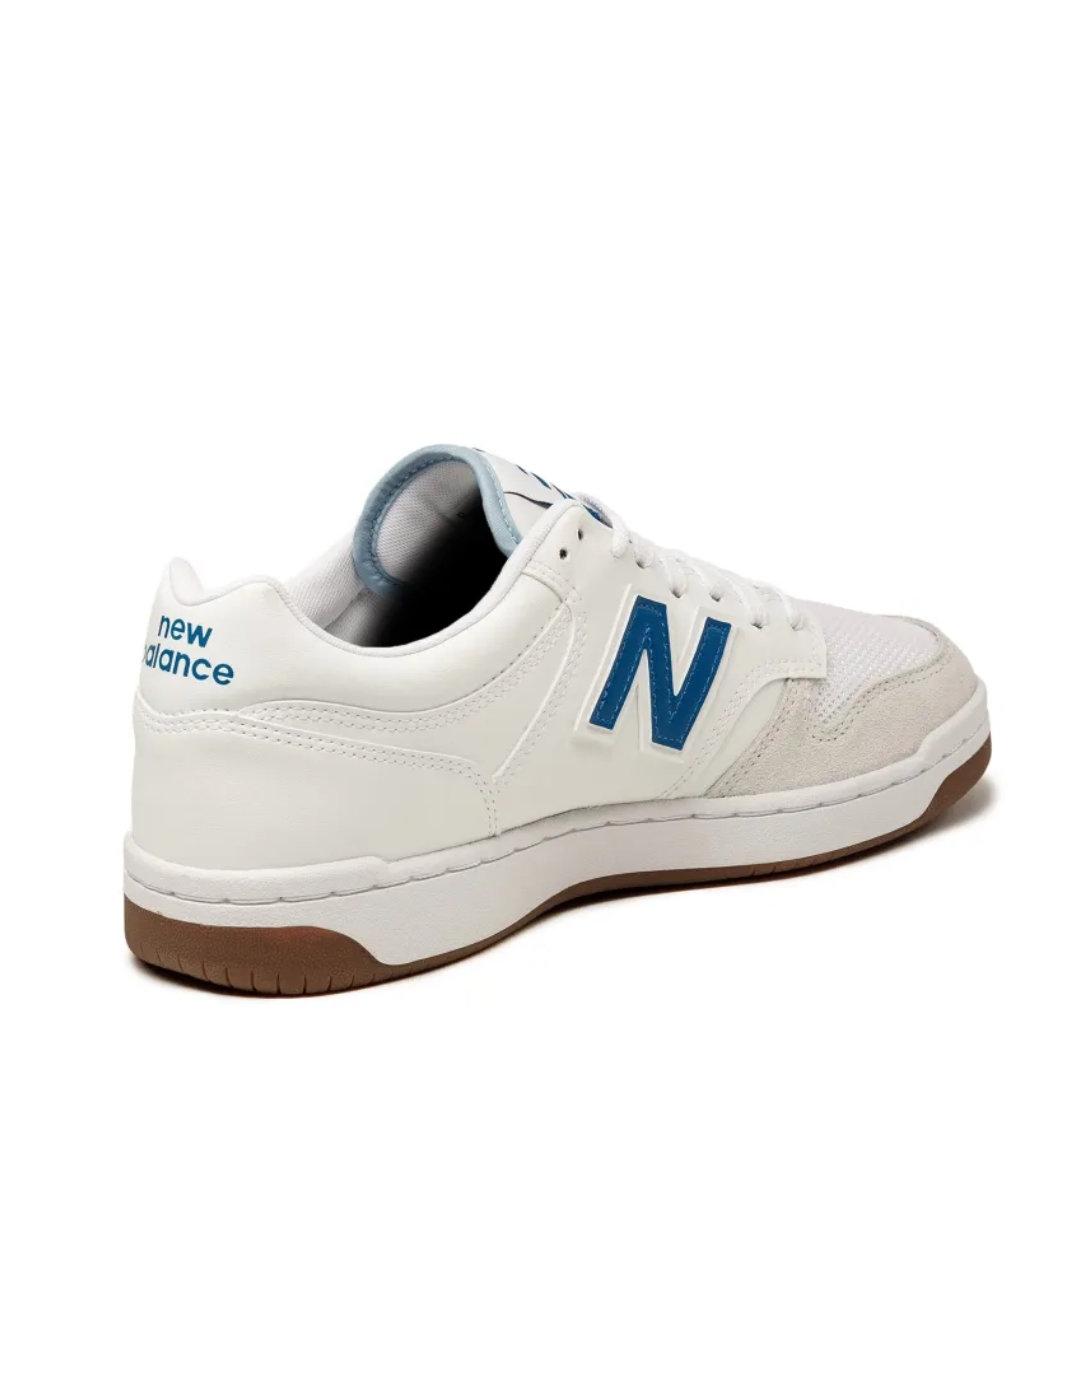 Zapatillas New Balance 480 blanca y azul para hombre